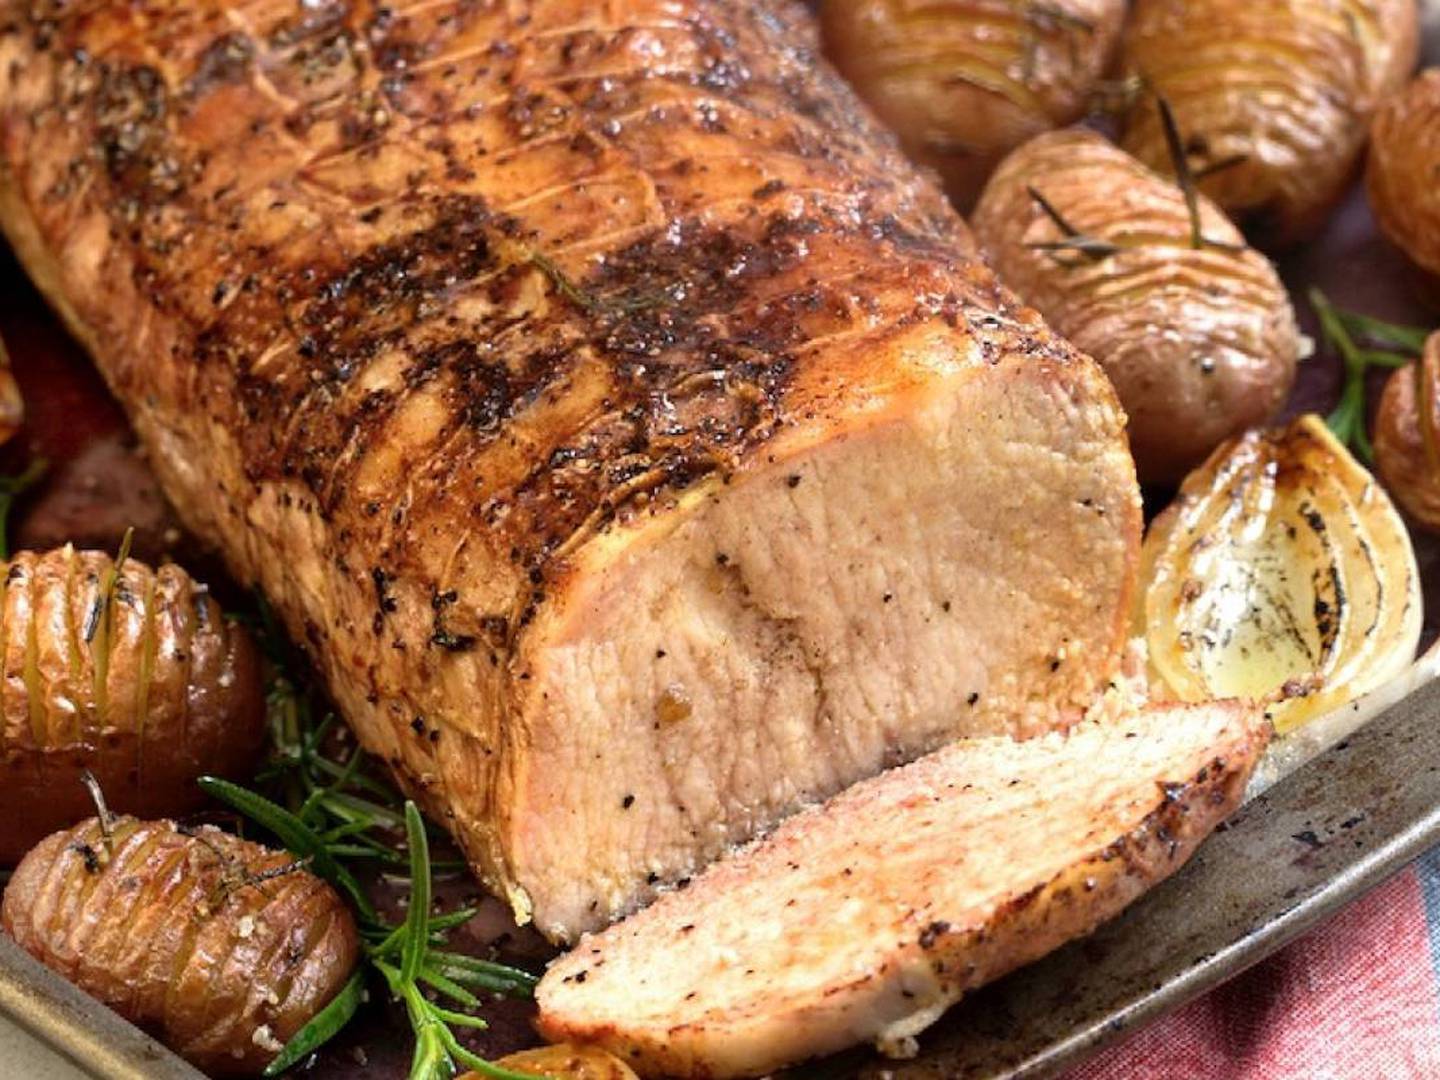 Bem-estar: comer carne de porco aumenta a sensação de saciedade – Metro  World News Brasil